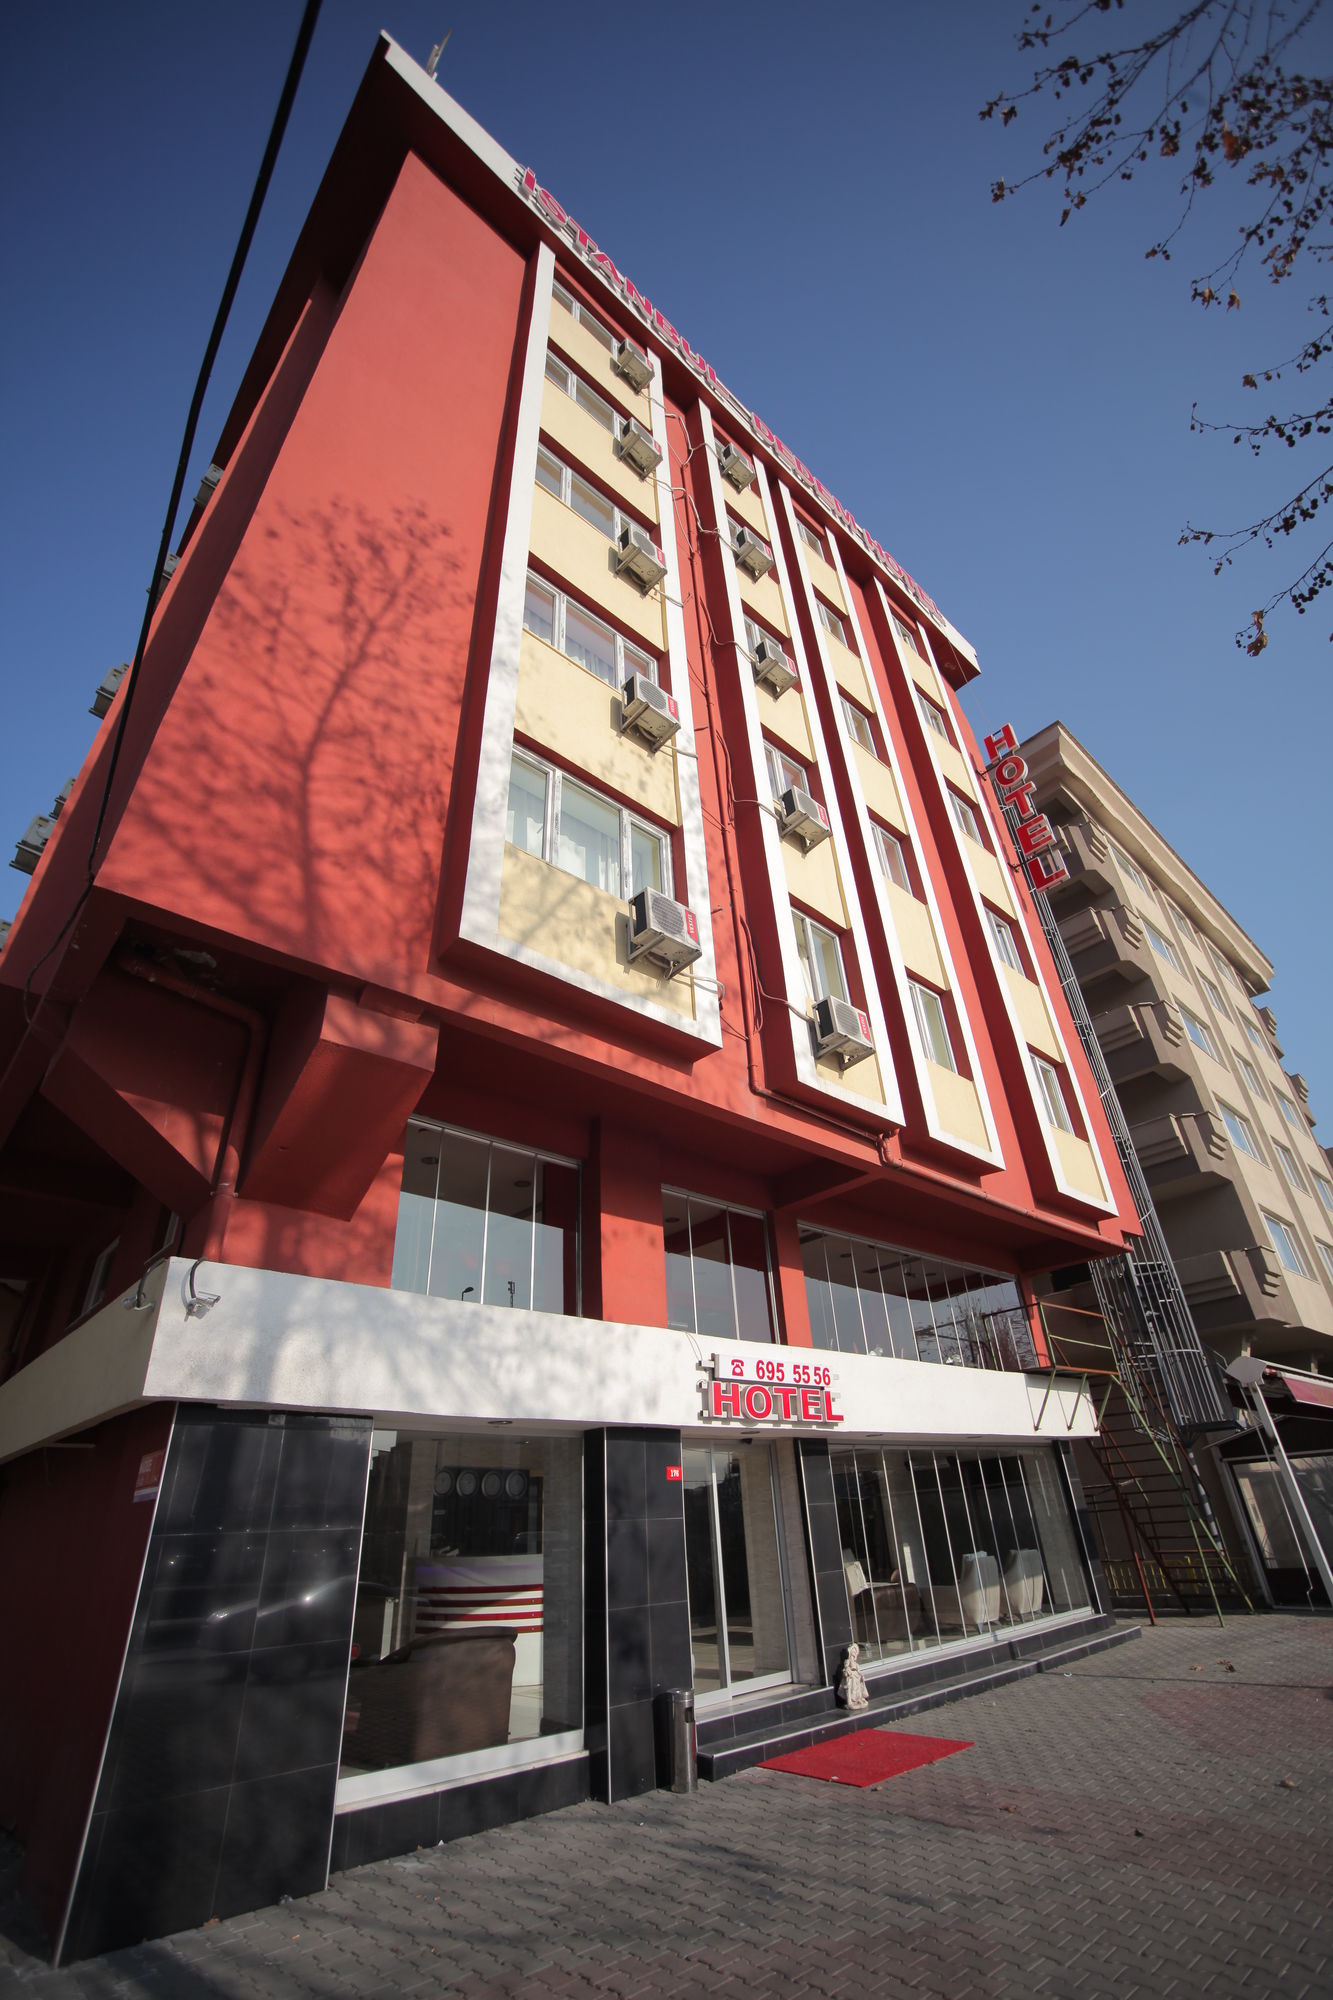 İstanbul Dedem Hotel (istanbul dedem hotel)